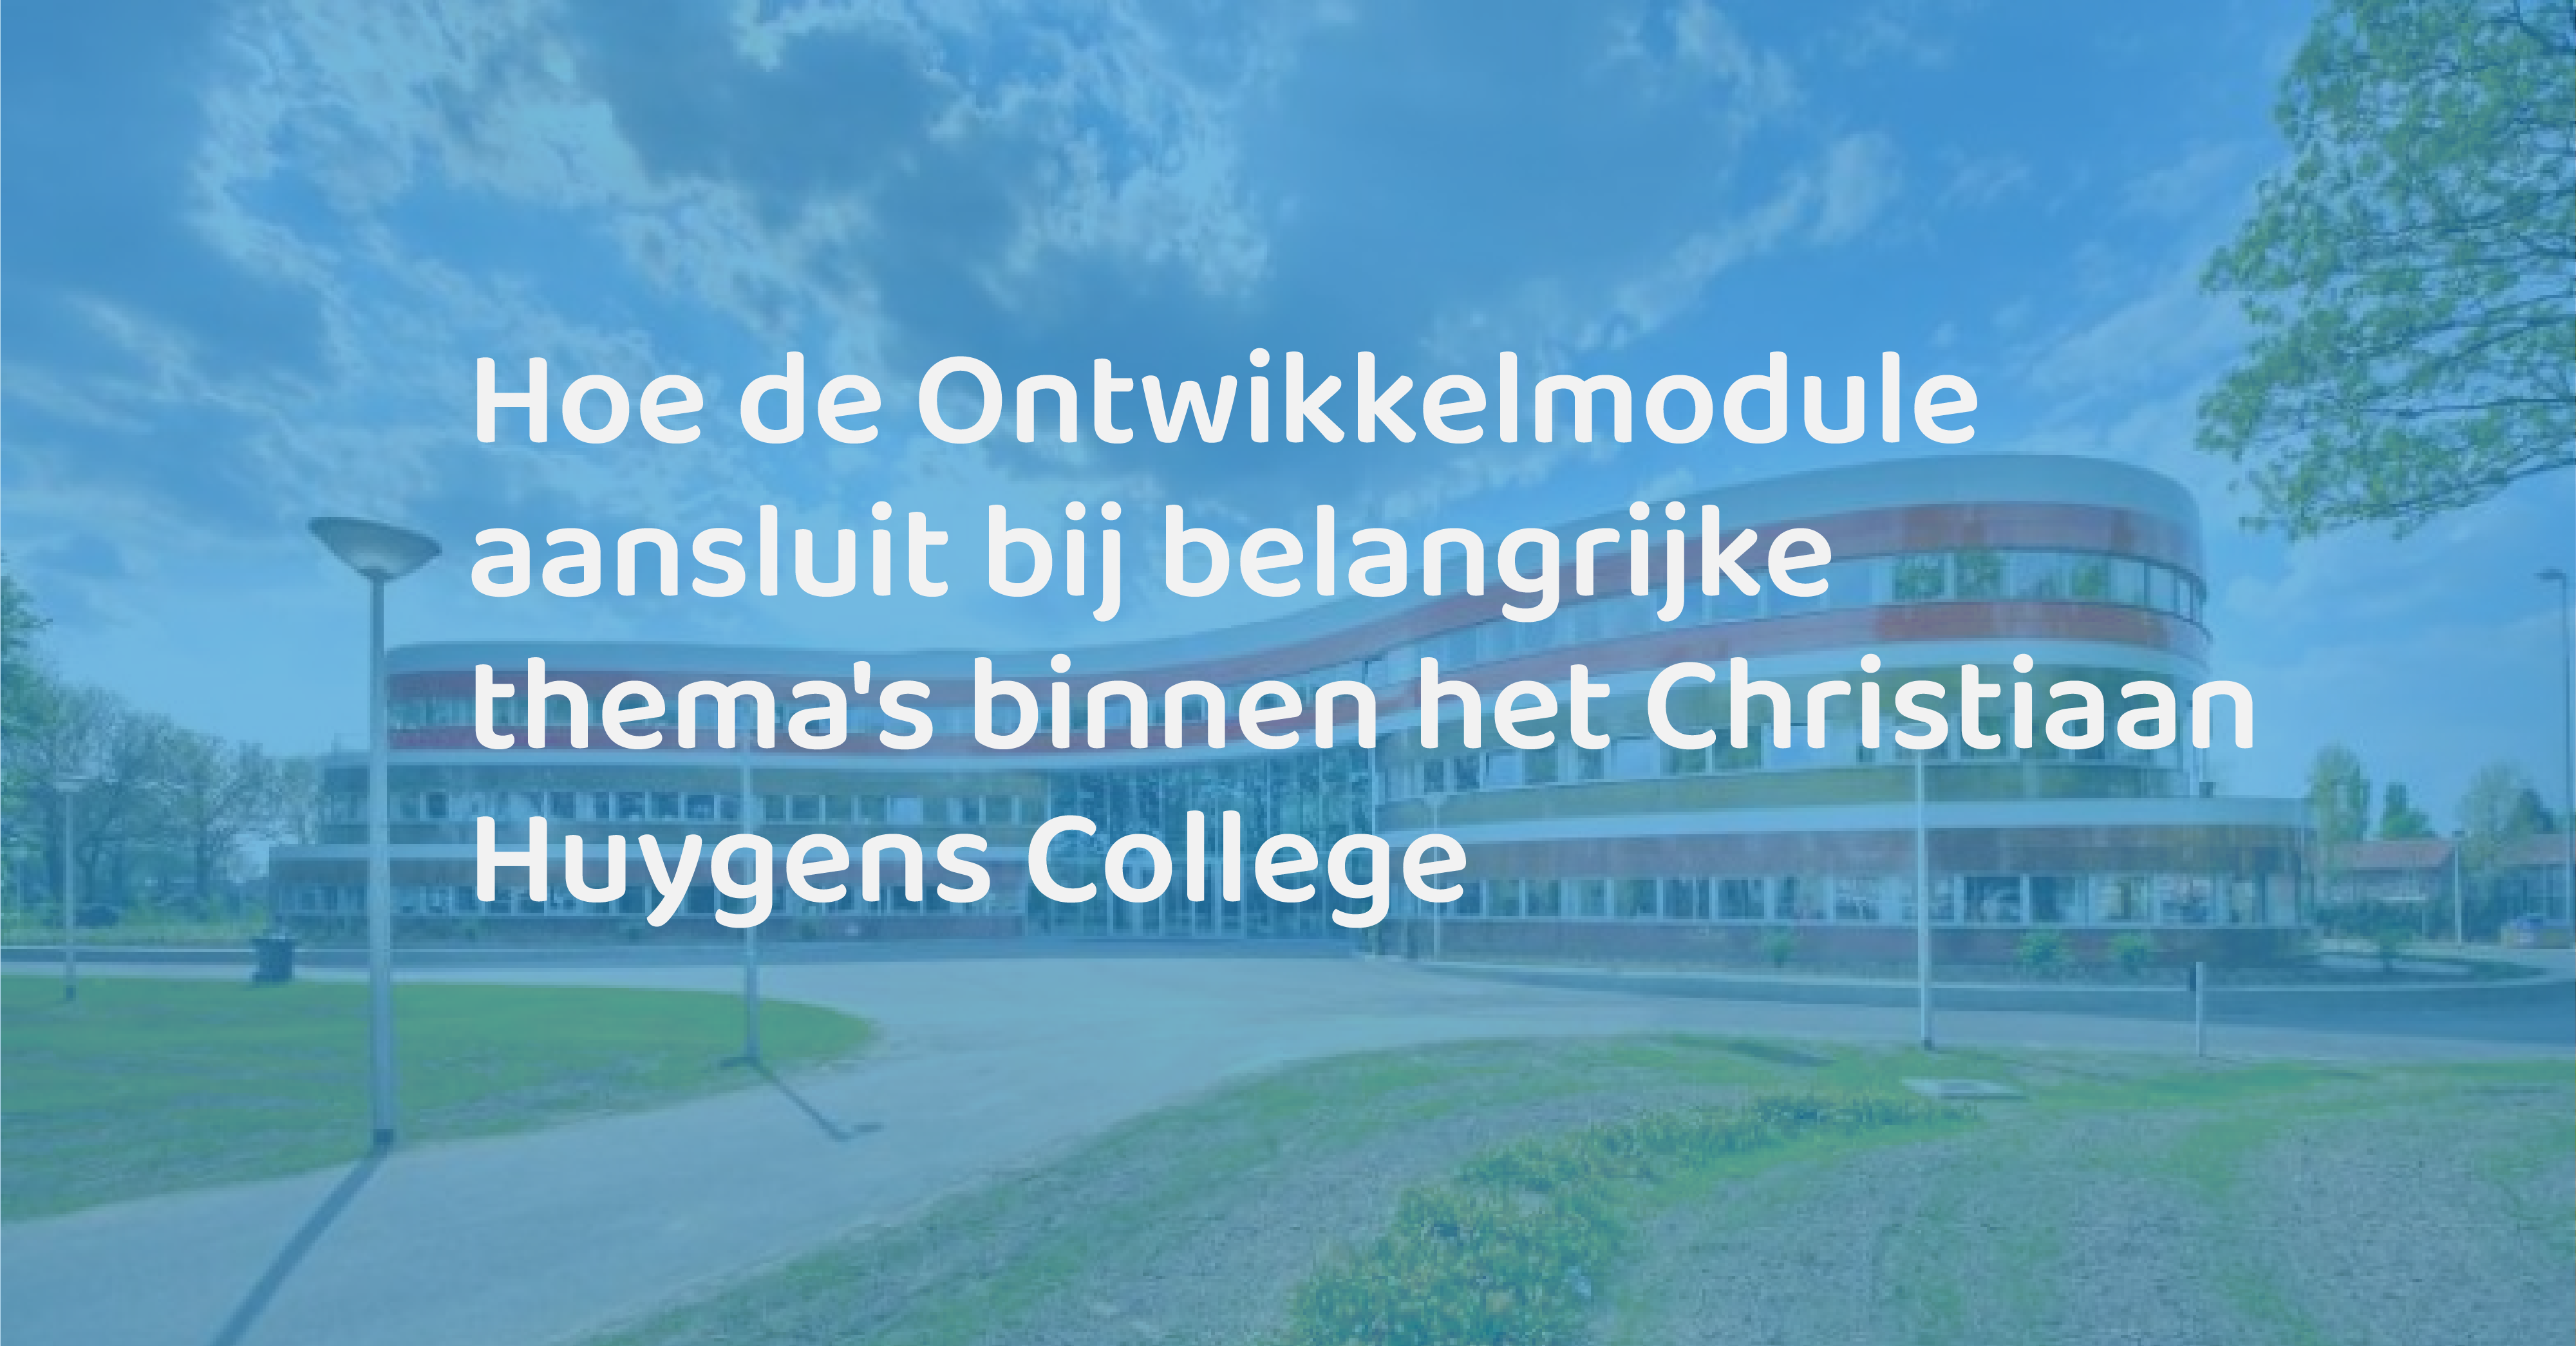 Je bekijkt nu Hoe de Ontwikkelmodule aansluit bij belangrijke thema’s binnen het Christiaan Huygens College